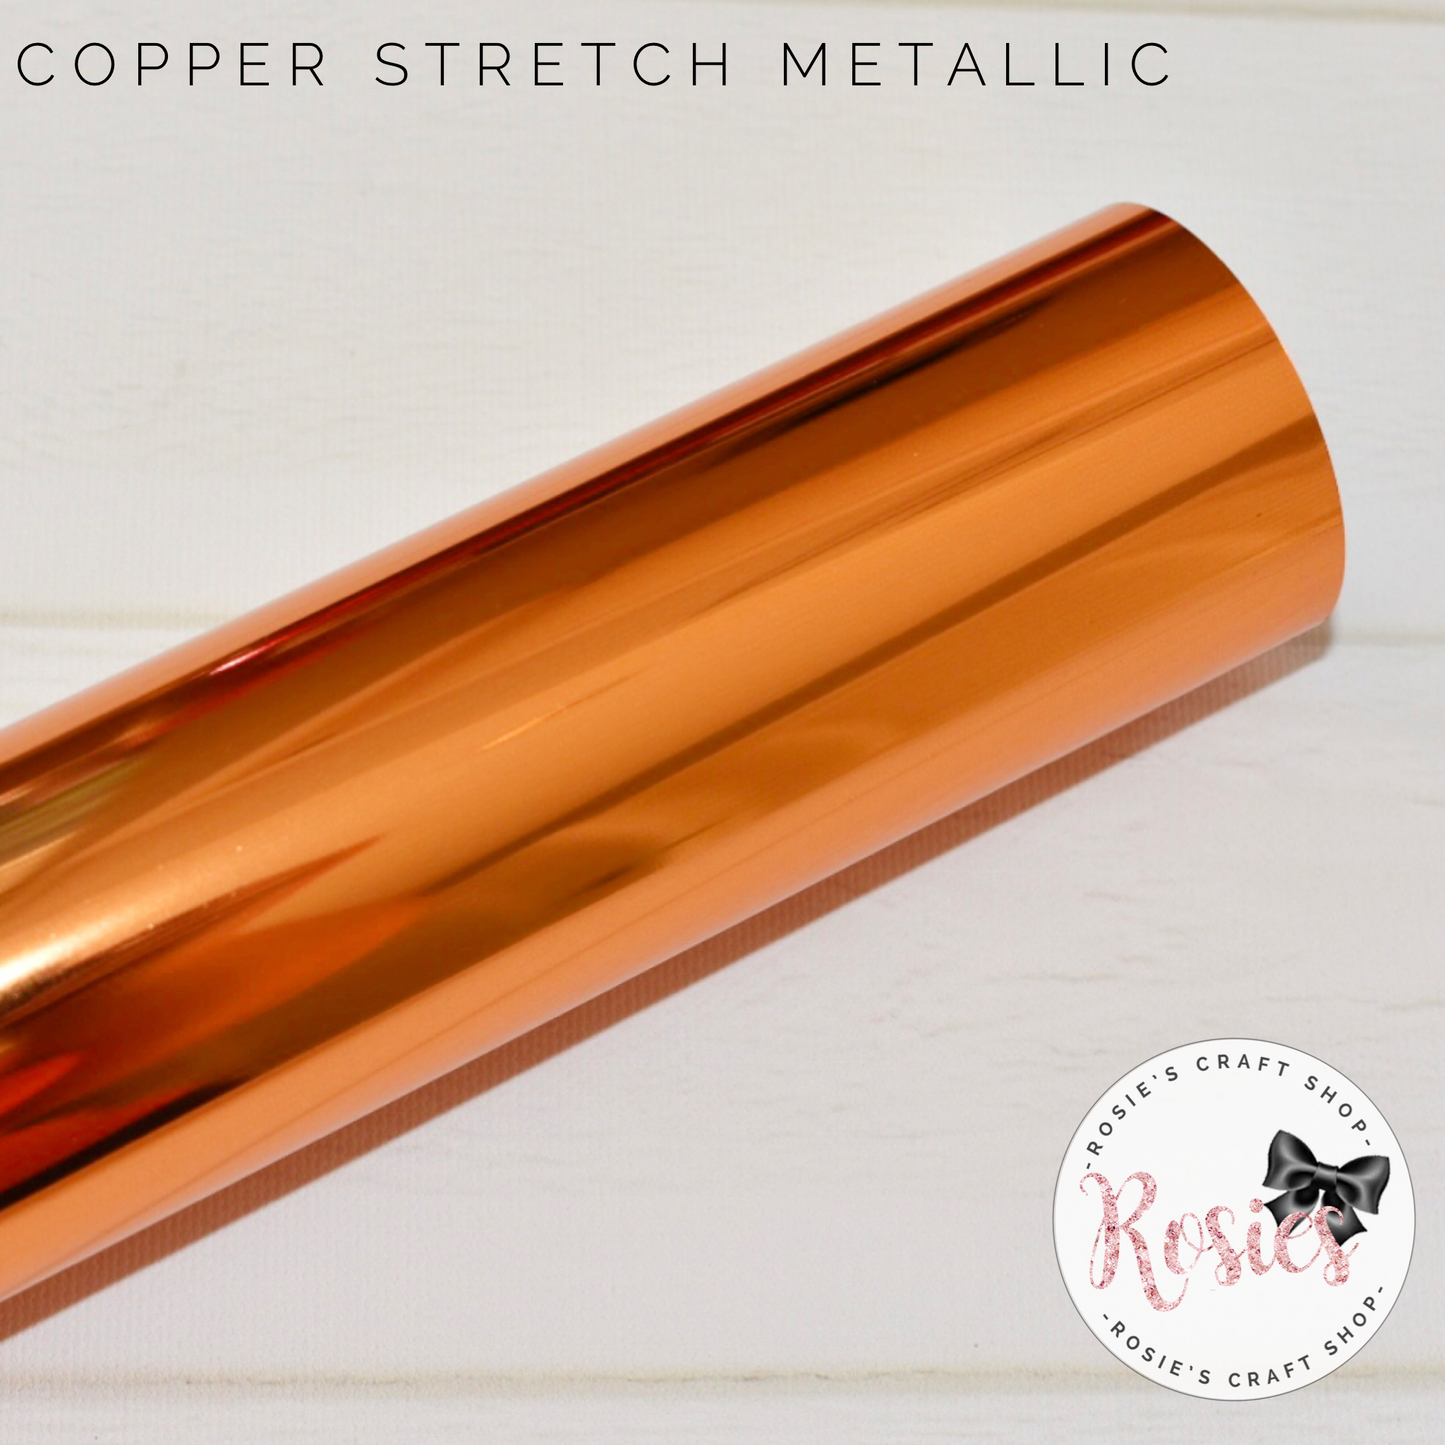 Copper Metallic Stretch Iron On Vinyl HTV - Rosie's Craft Shop Ltd